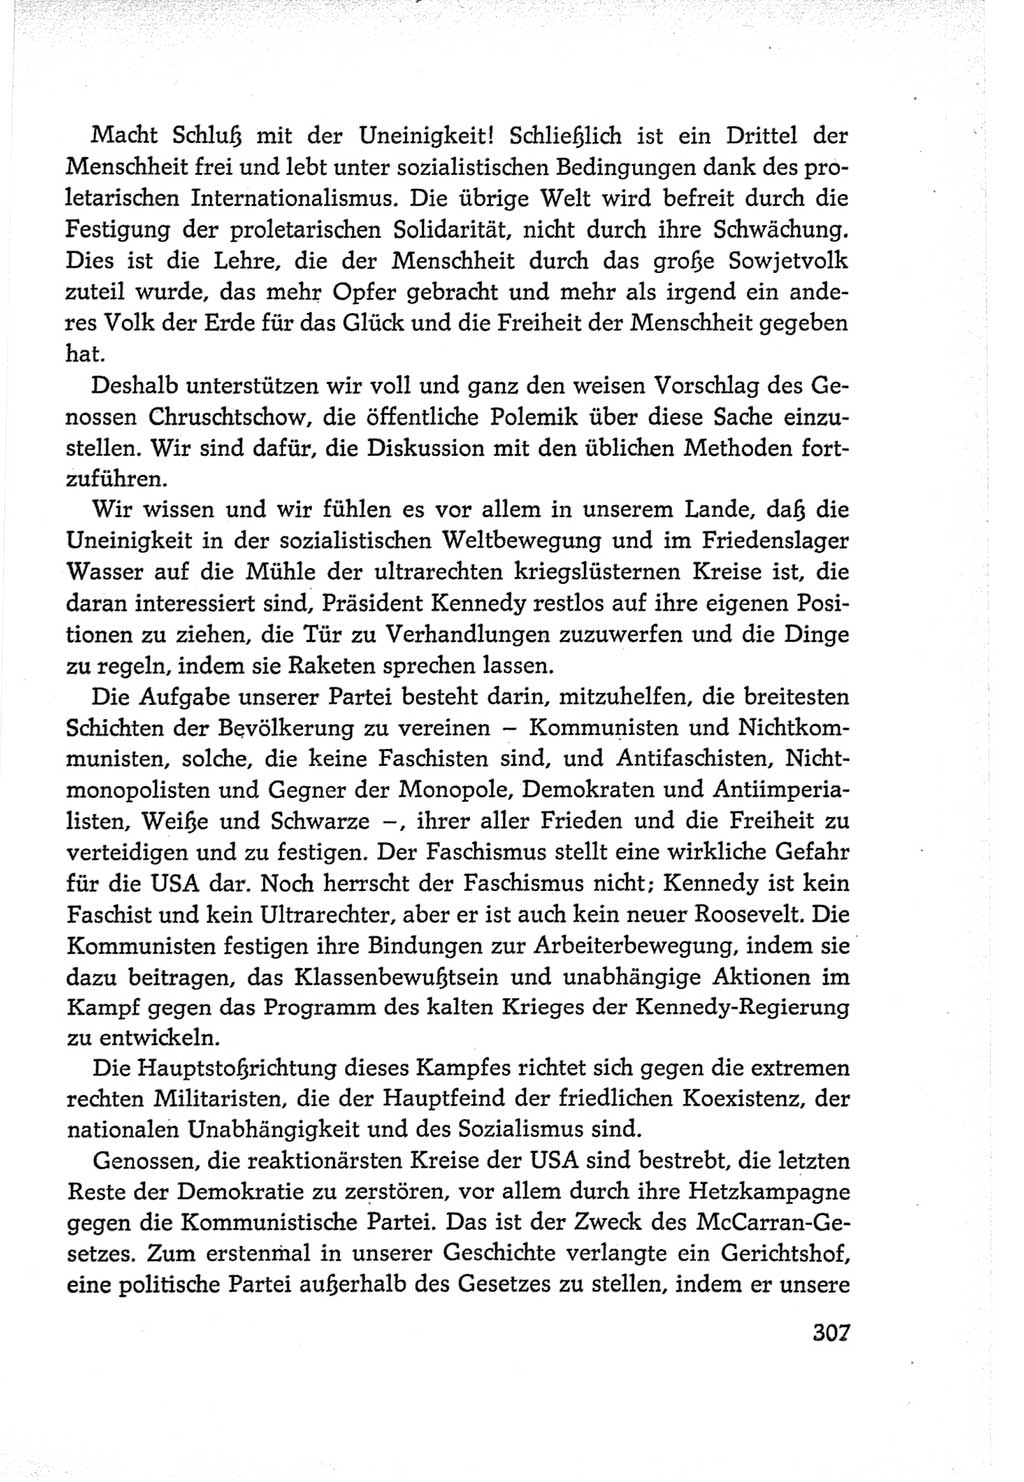 Protokoll der Verhandlungen des Ⅵ. Parteitages der Sozialistischen Einheitspartei Deutschlands (SED) [Deutsche Demokratische Republik (DDR)] 1963, Band Ⅱ, Seite 307 (Prot. Verh. Ⅵ. PT SED DDR 1963, Bd. Ⅱ, S. 307)